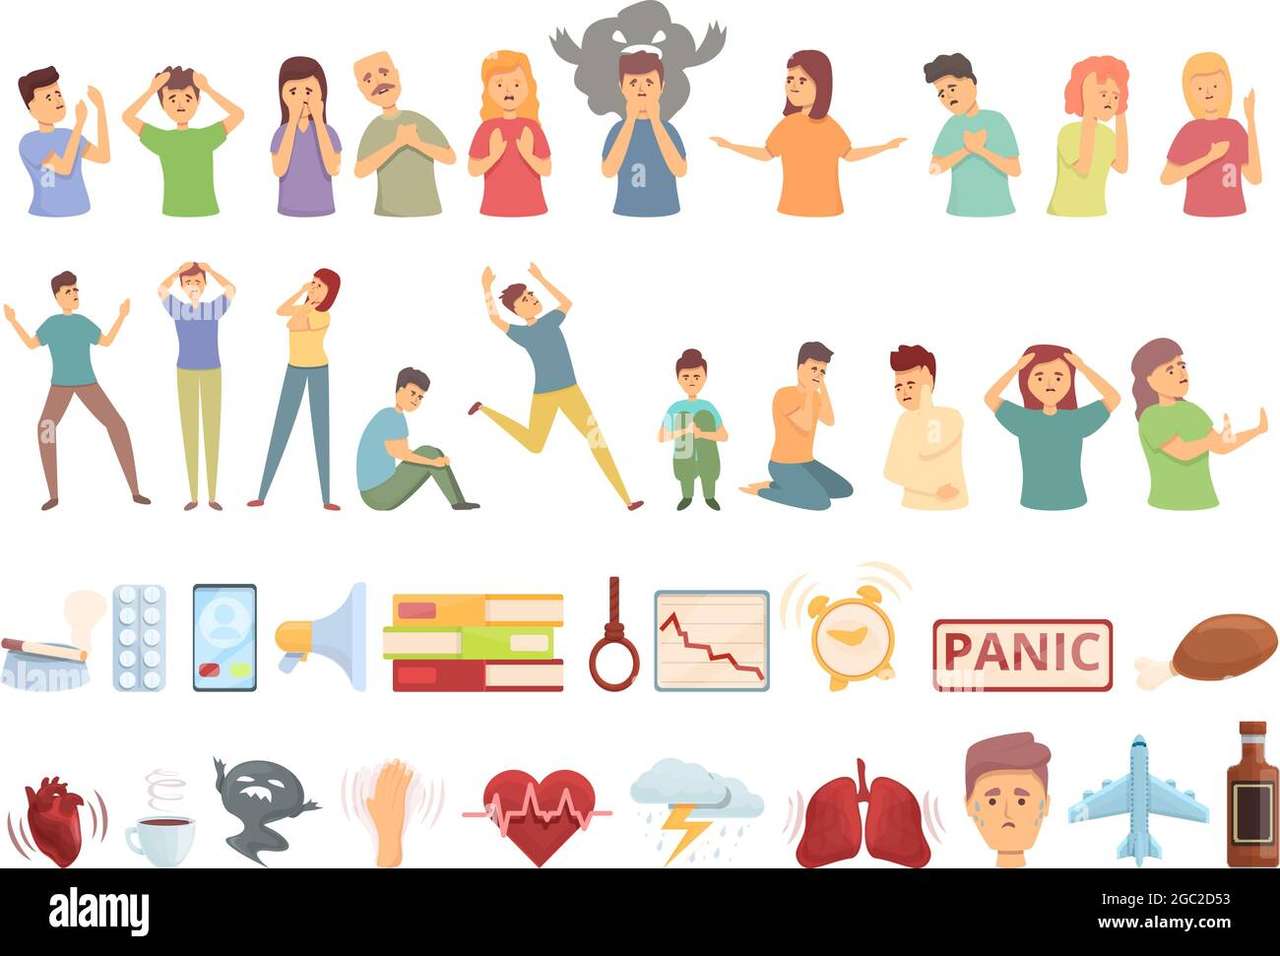 Identificeer de symptomen van paniek online puzzel